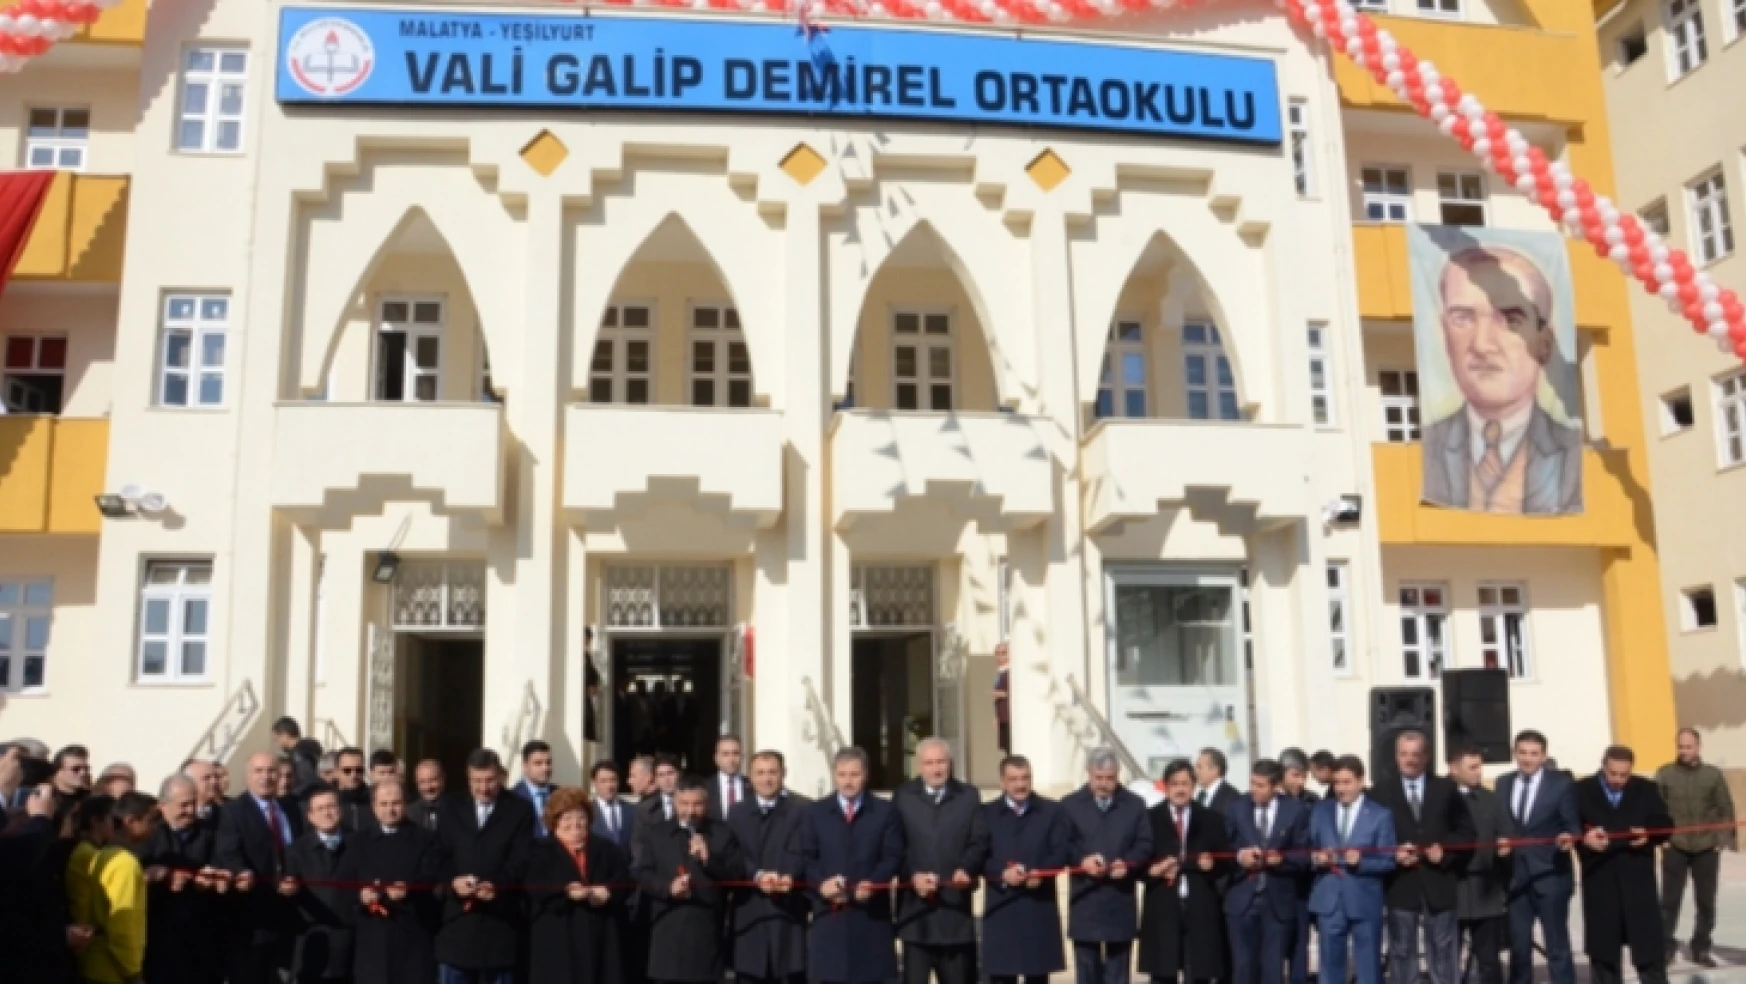 Vali Galip Demirel Ortaokulu'nun açılışı gerçekleşti